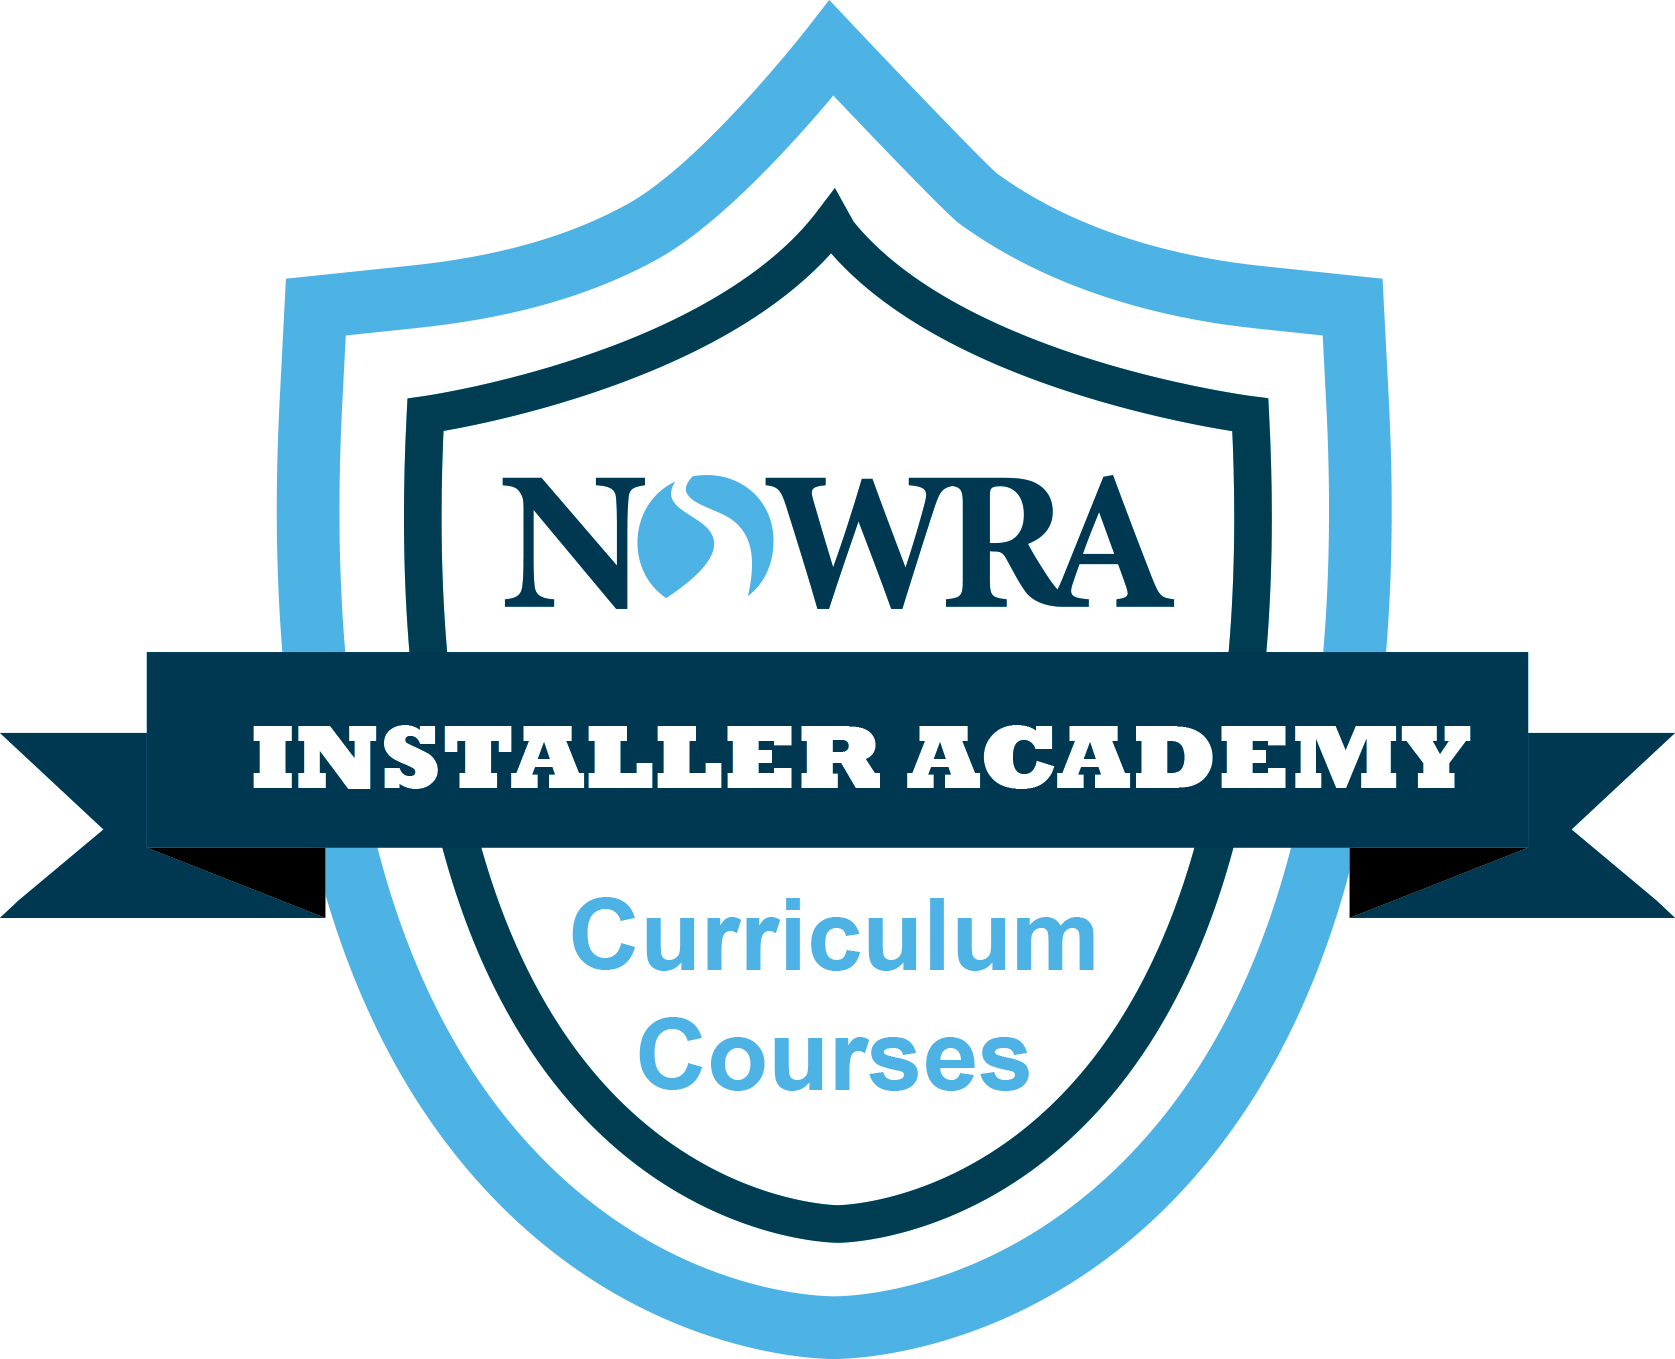 NOWRA Installer Academy logo